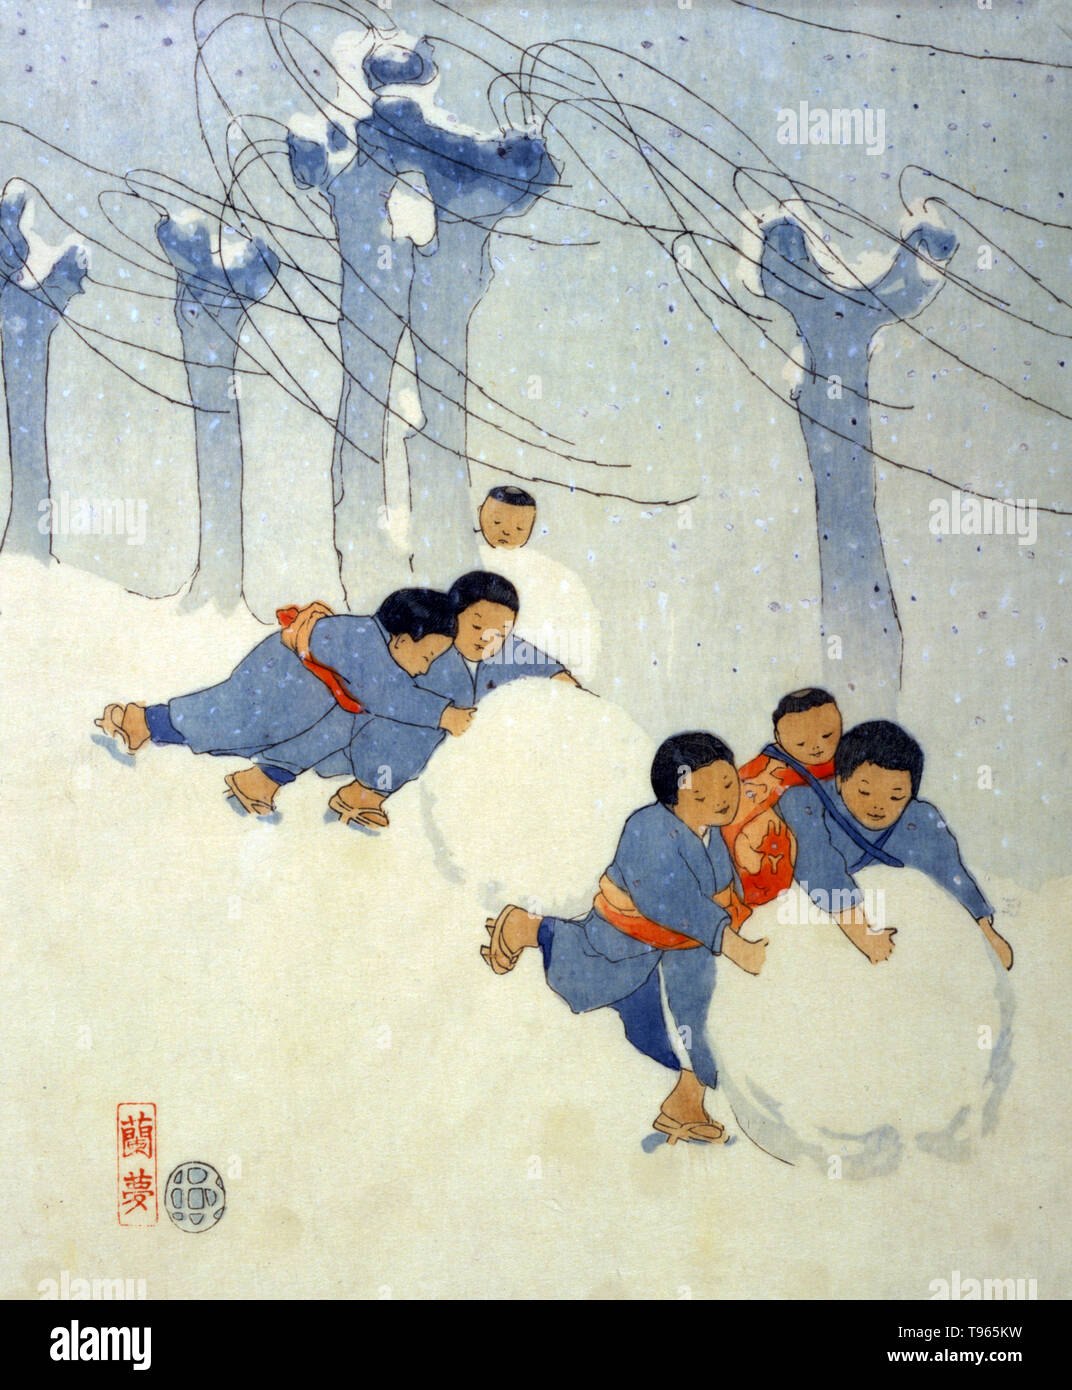 Bambini giapponesi il rotolamento grandi palle di neve. Ukiyo-e (immagine del mondo fluttuante) è un genere di arte giapponese che fiorì dal XVII attraverso il XIX secolo. Ukiyo-e è stato centrale per formare l'Occidente la percezione dell'arte giapponese nel tardo XIX secolo. Genere del paesaggio è venuto a dominare le percezioni occidentali dell'ukiyo-e, sebbene ukiyo-e ha avuto una lunga storia precedenti questi tarda epoca maestri. Foto Stock